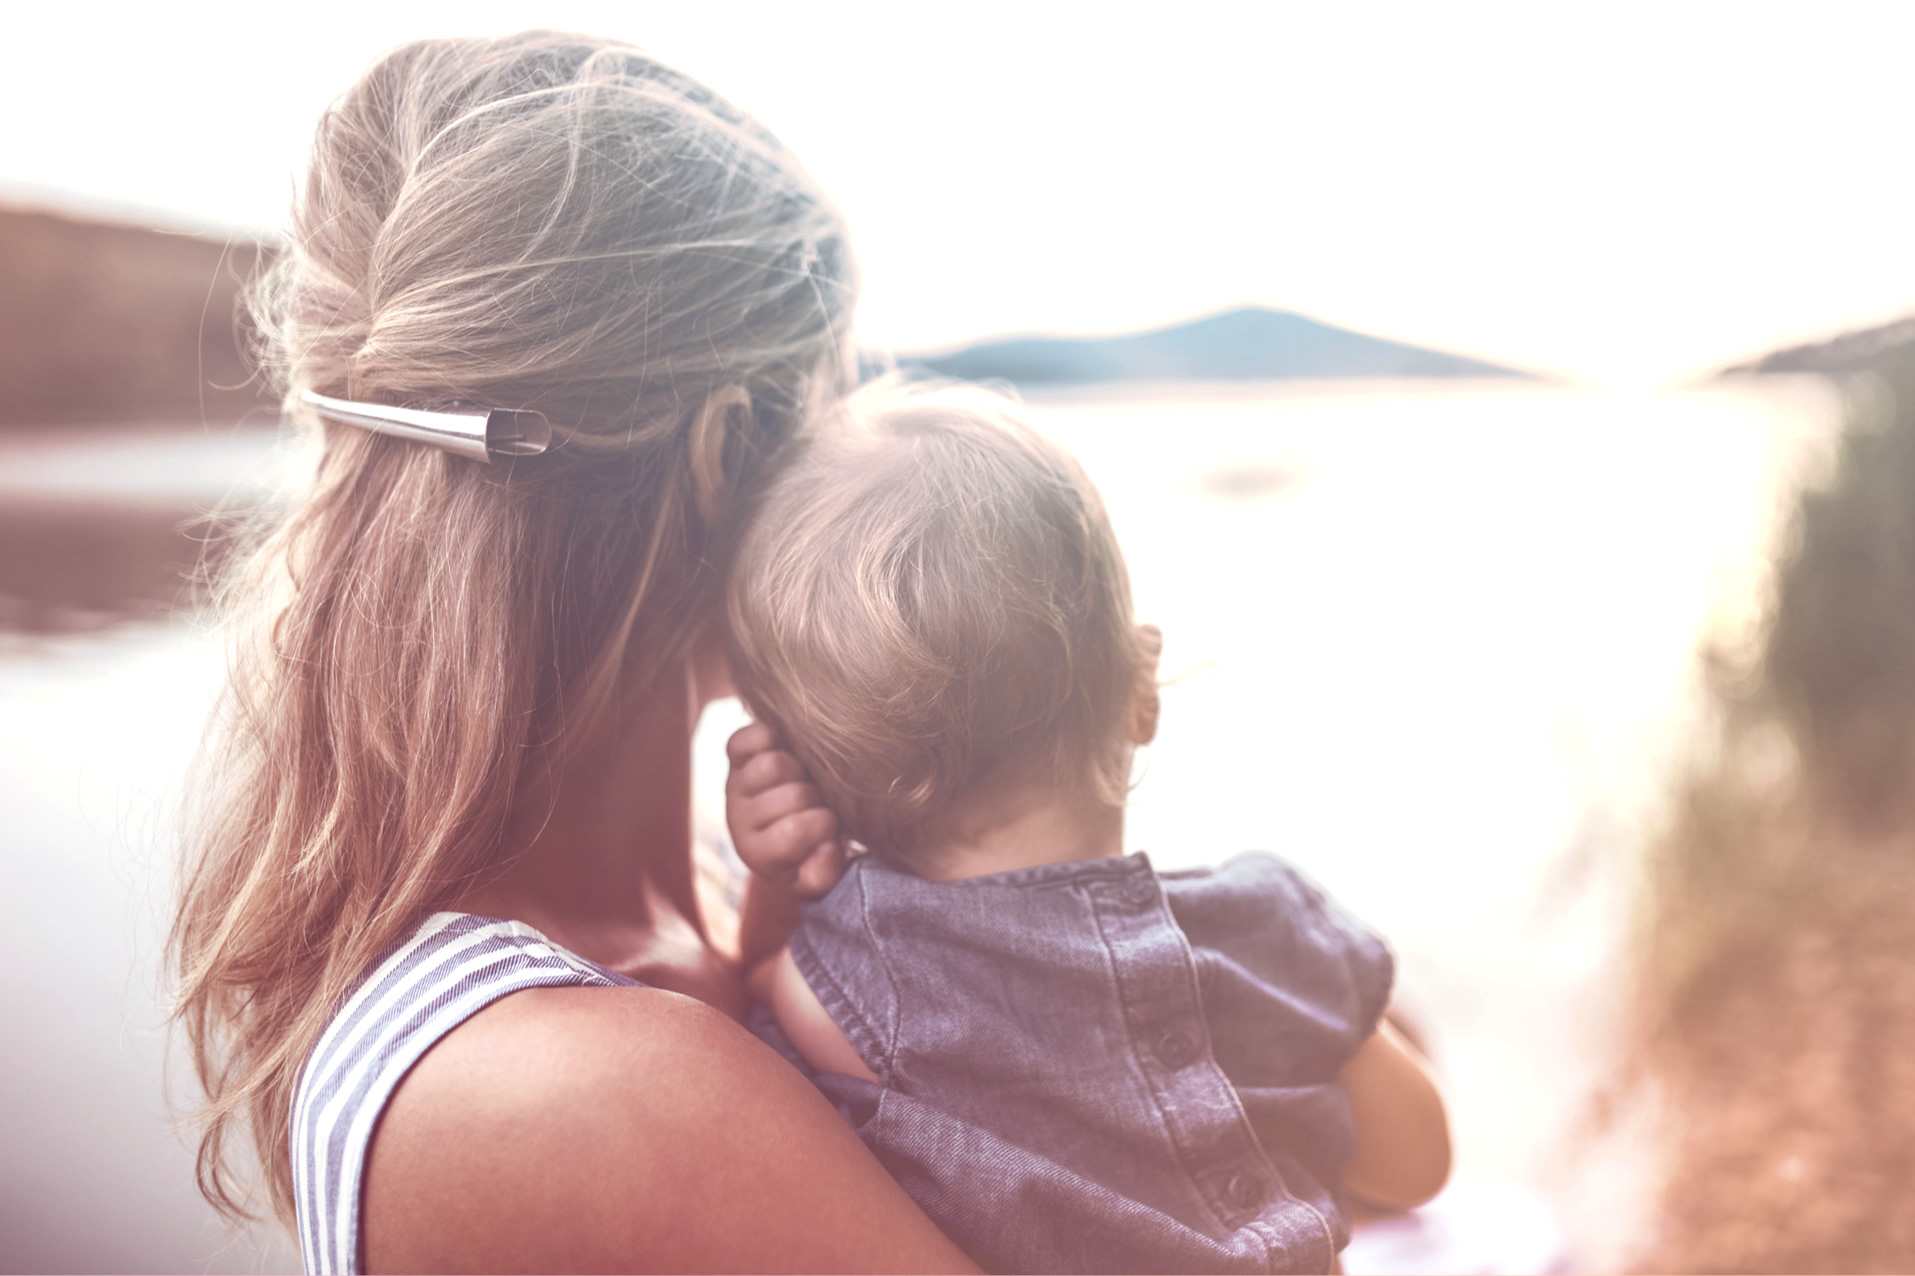 Una madre amorevole che guarda verso l'orizzonte mentre tiene in braccio un bambino piccolo, rappresentando la gioia di una famiglia che potrebbe essere stata aiutata da trattamenti di fertilità come la fertilizzazione intrauterina assistita.